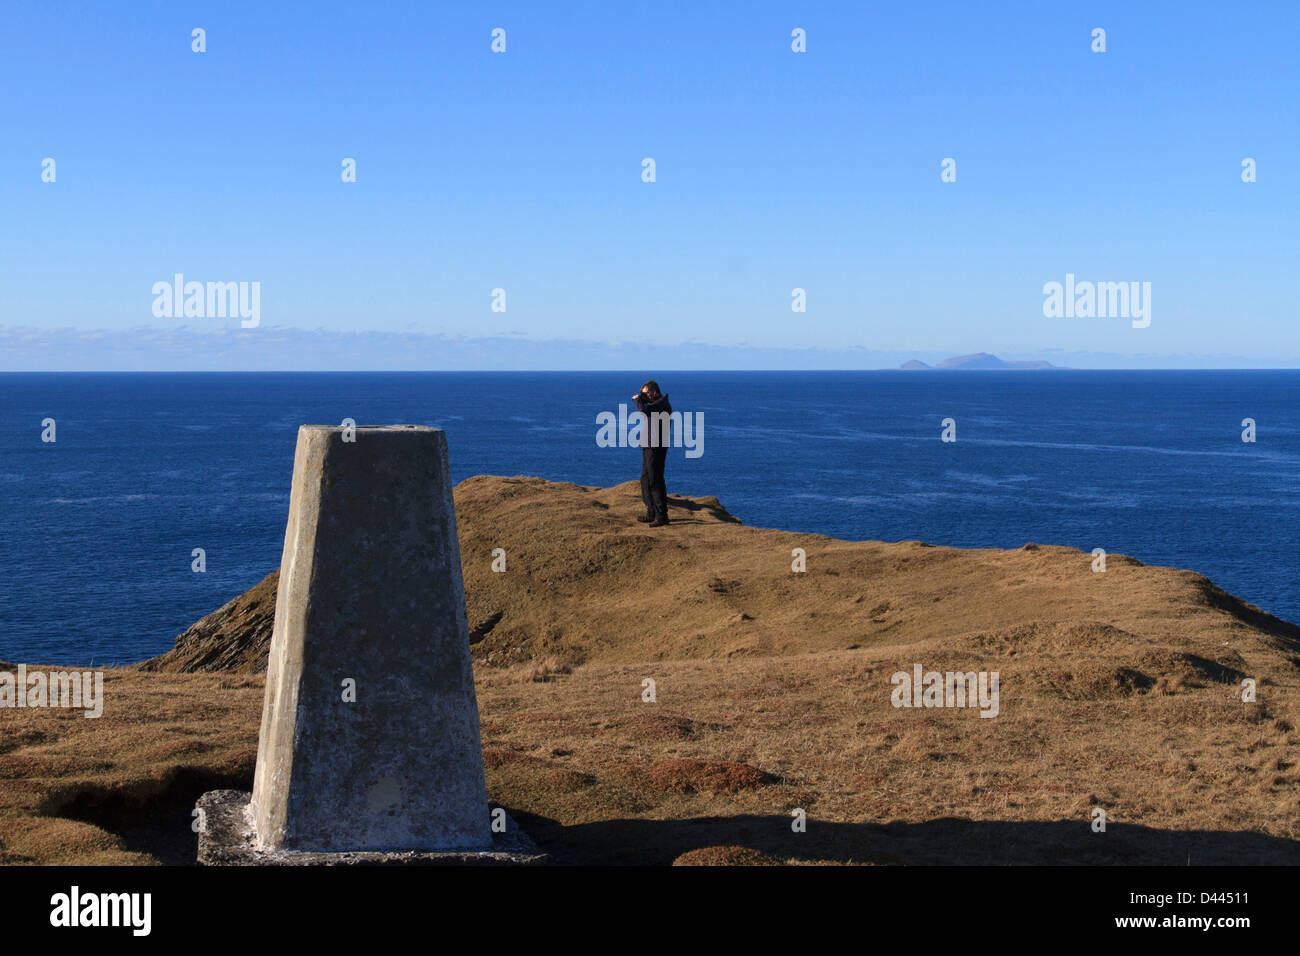 Un maschio fotografo sta prendendo una foto sul bordo del mare con un punto trigonometrico in primo piano Foto Stock